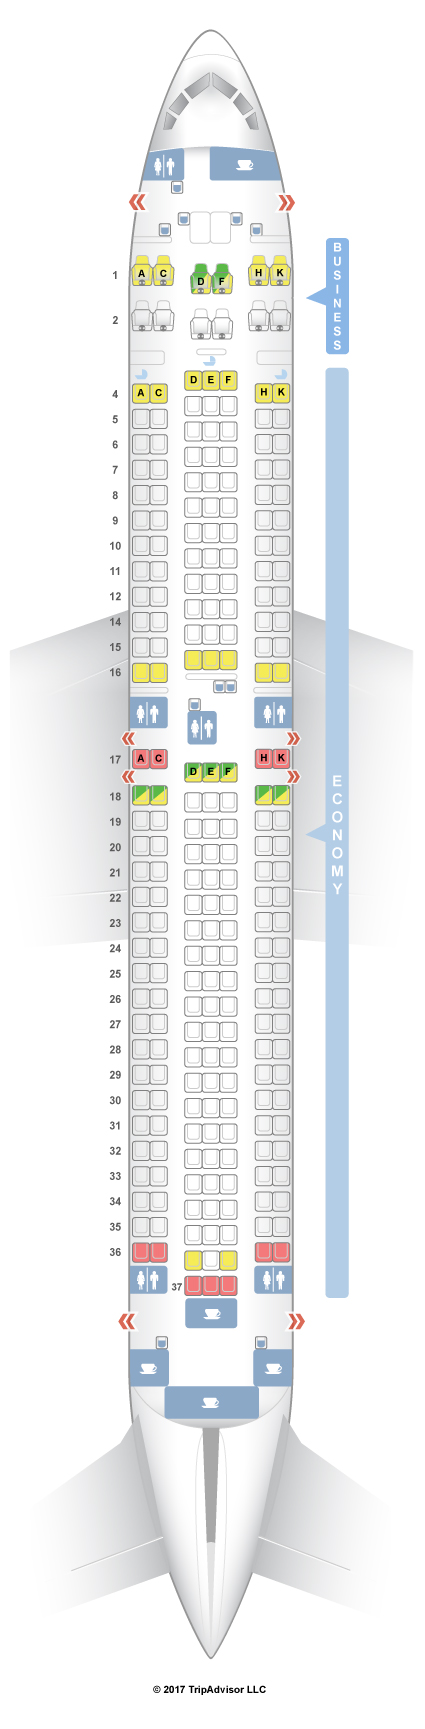 Icelandair Seating Chart